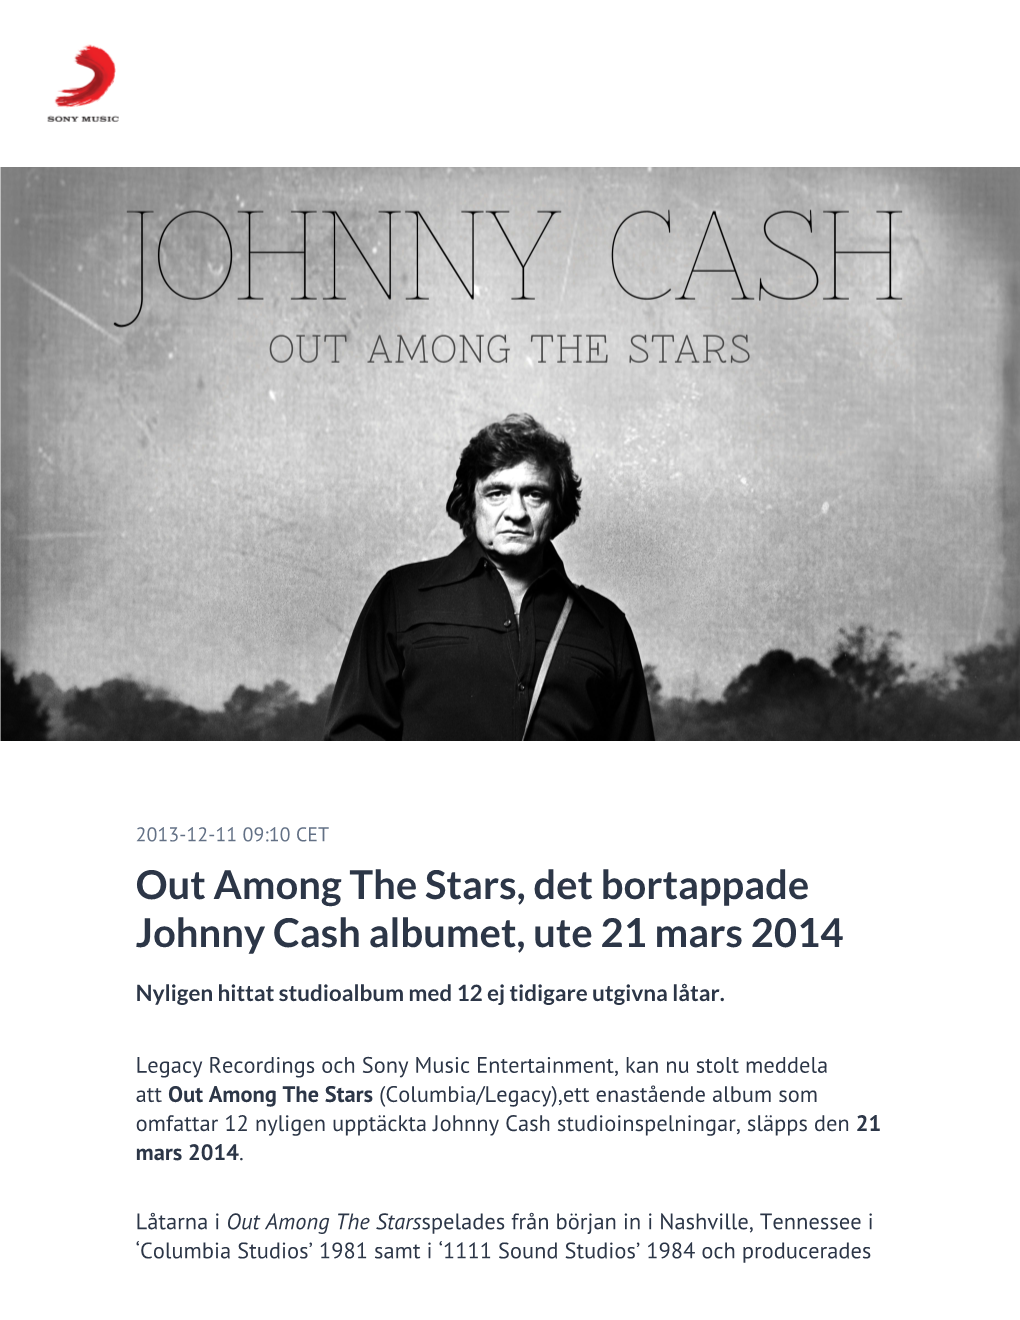 Out Among the Stars, Det Bortappade Johnny Cash Albumet, Ute 21 Mars 2014